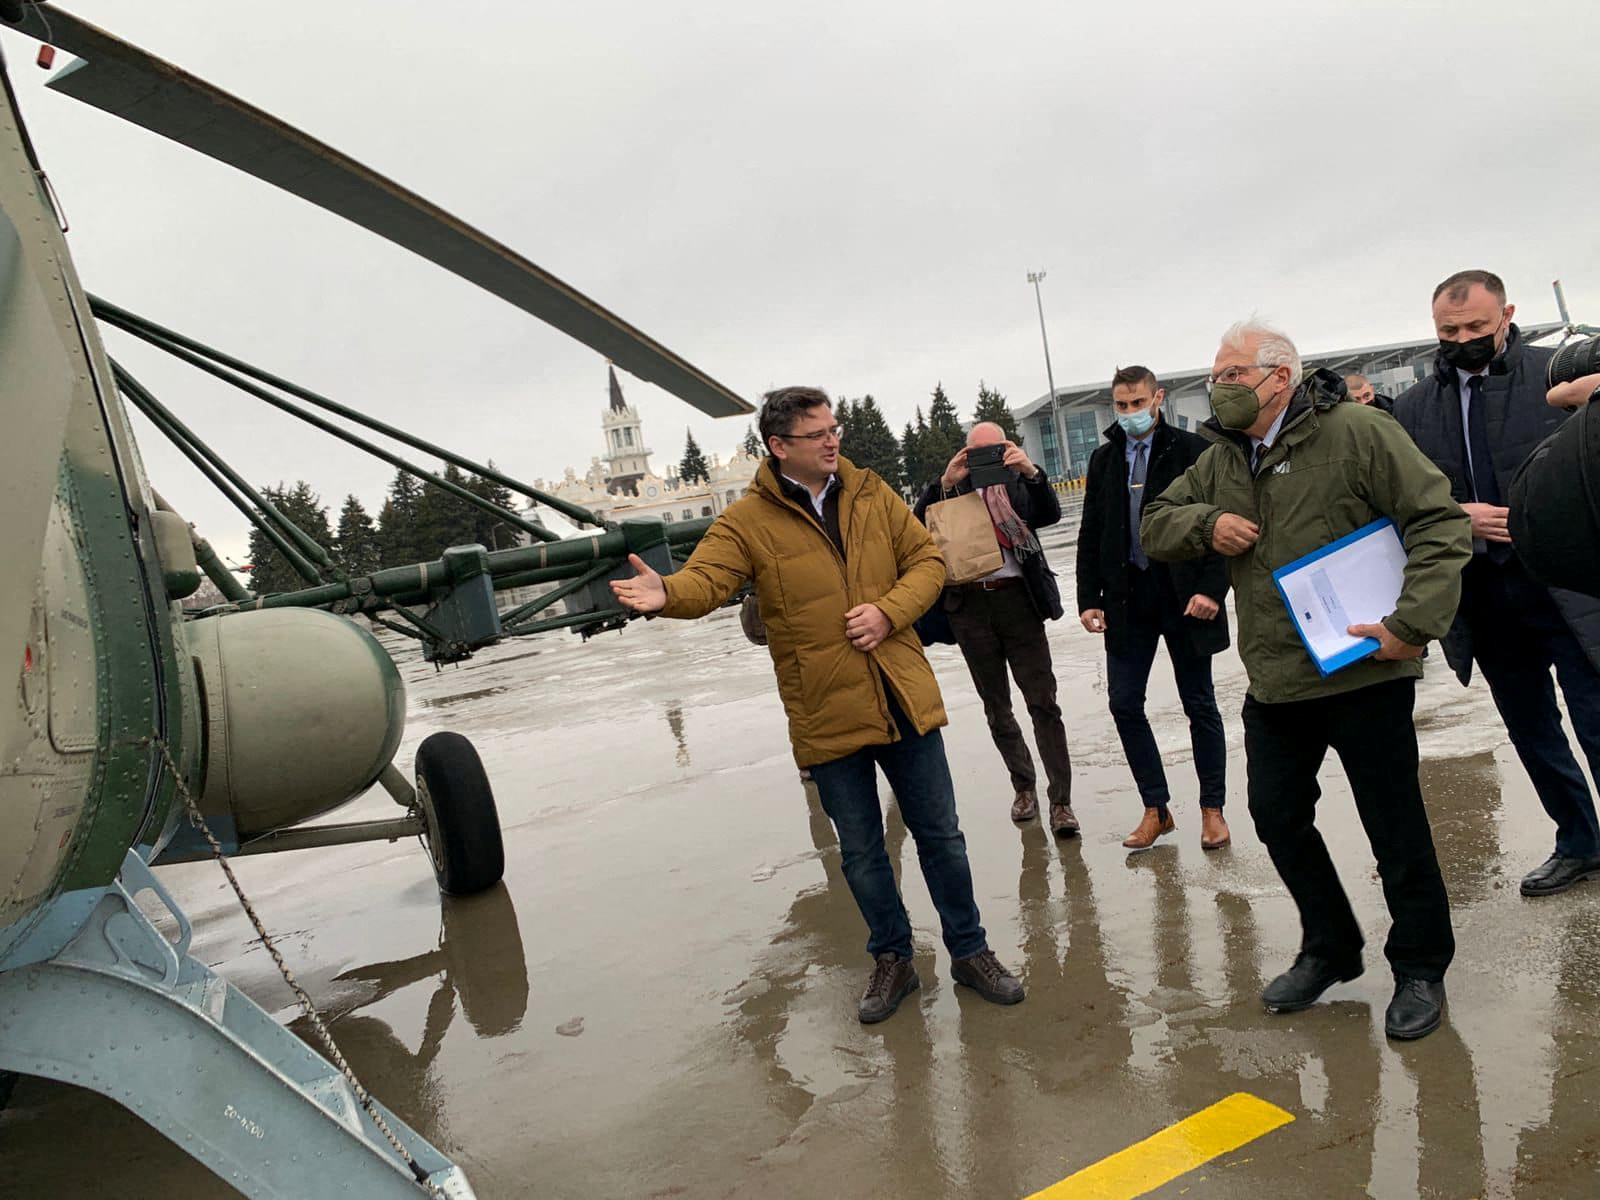 यूक्रेन के विदेश मंत्री दिमित्रो कुलेबा और यूरोपीय संघ के विदेश मामलों के उच्च प्रतिनिधि जोसेप बोरेल 5 जनवरी, 2022 को यूक्रेन के खार्किव में हवाई अड्डे पर पूर्वी लुहान्स्क क्षेत्र के लिए प्रस्थान करने के लिए एक हेलीकॉप्टर में सवार होते हैं। यूक्रेनी विदेश मंत्रालय / REUTERS के माध्यम से हैंडआउट